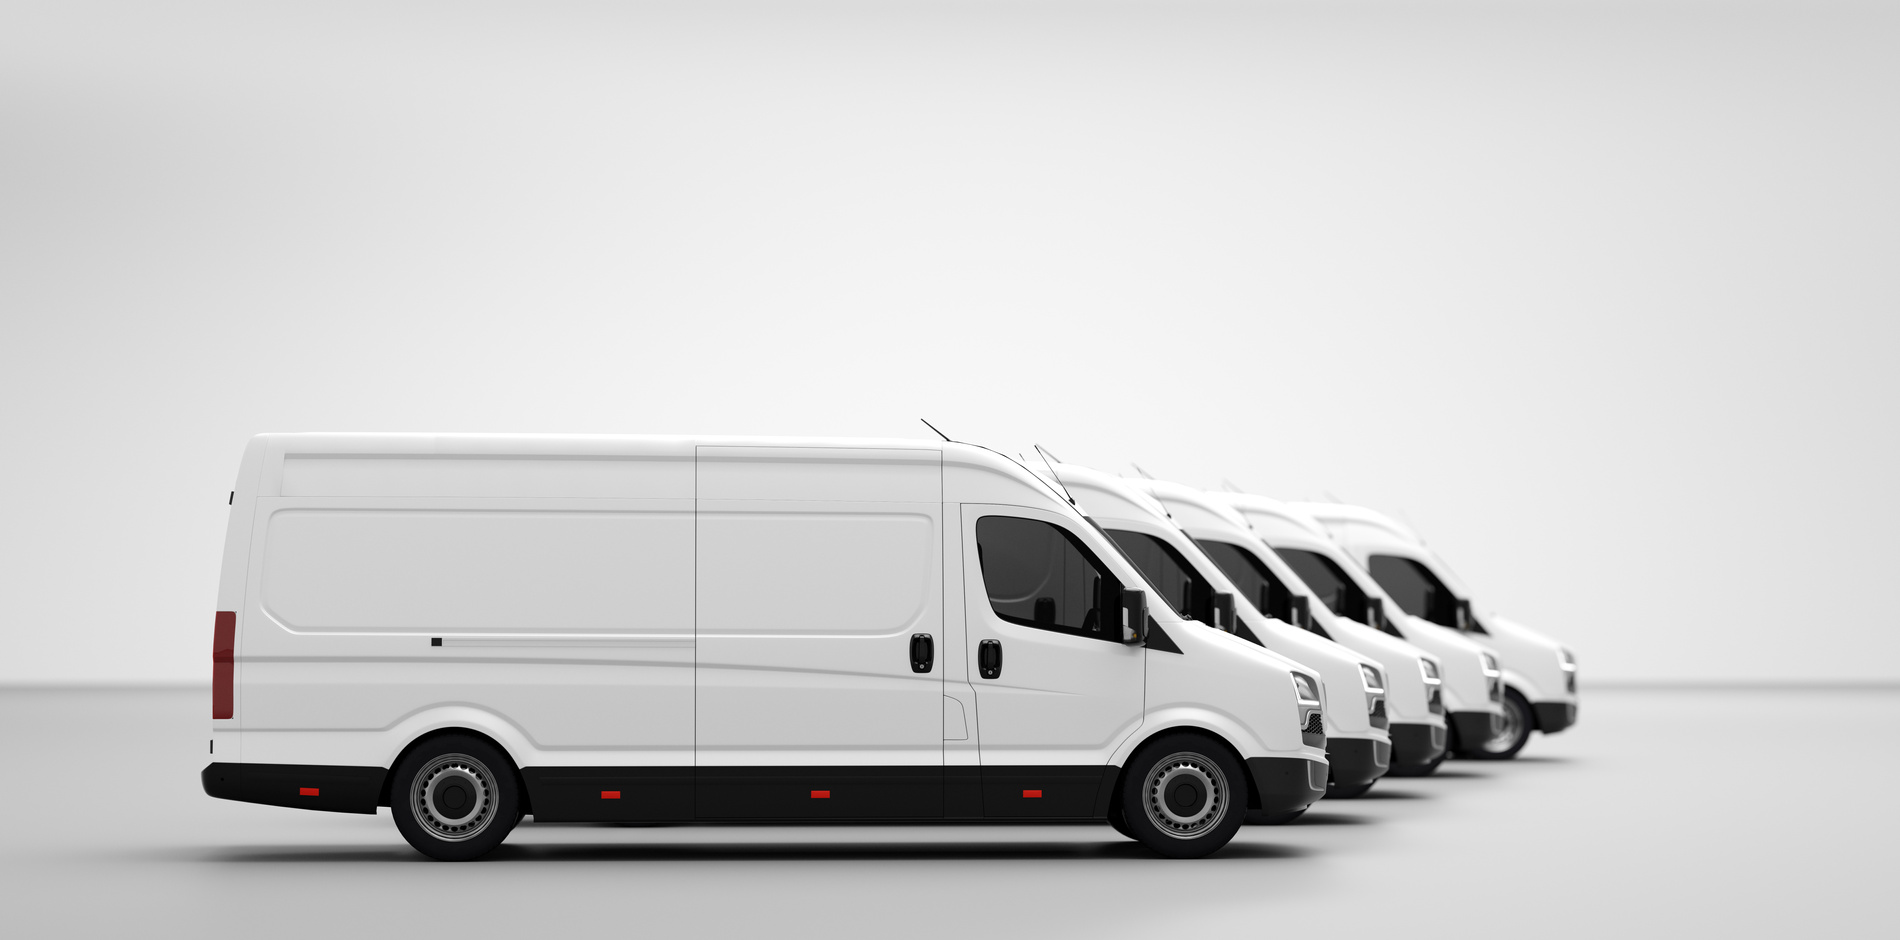 Fleet of Van Transportation Trucks